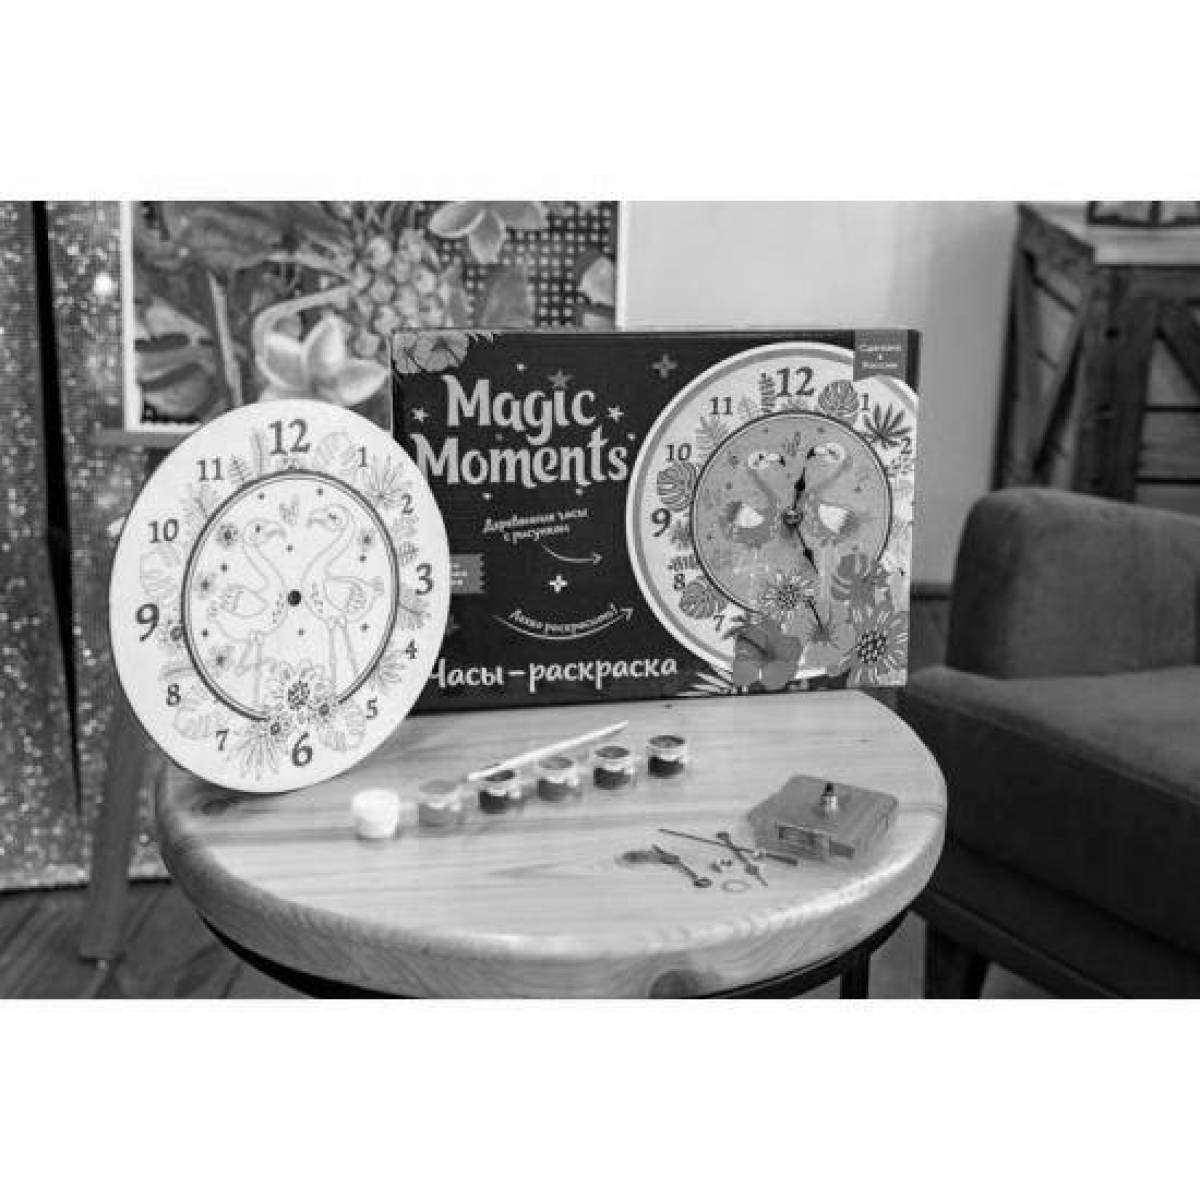 Mystical coloring clock magic moments